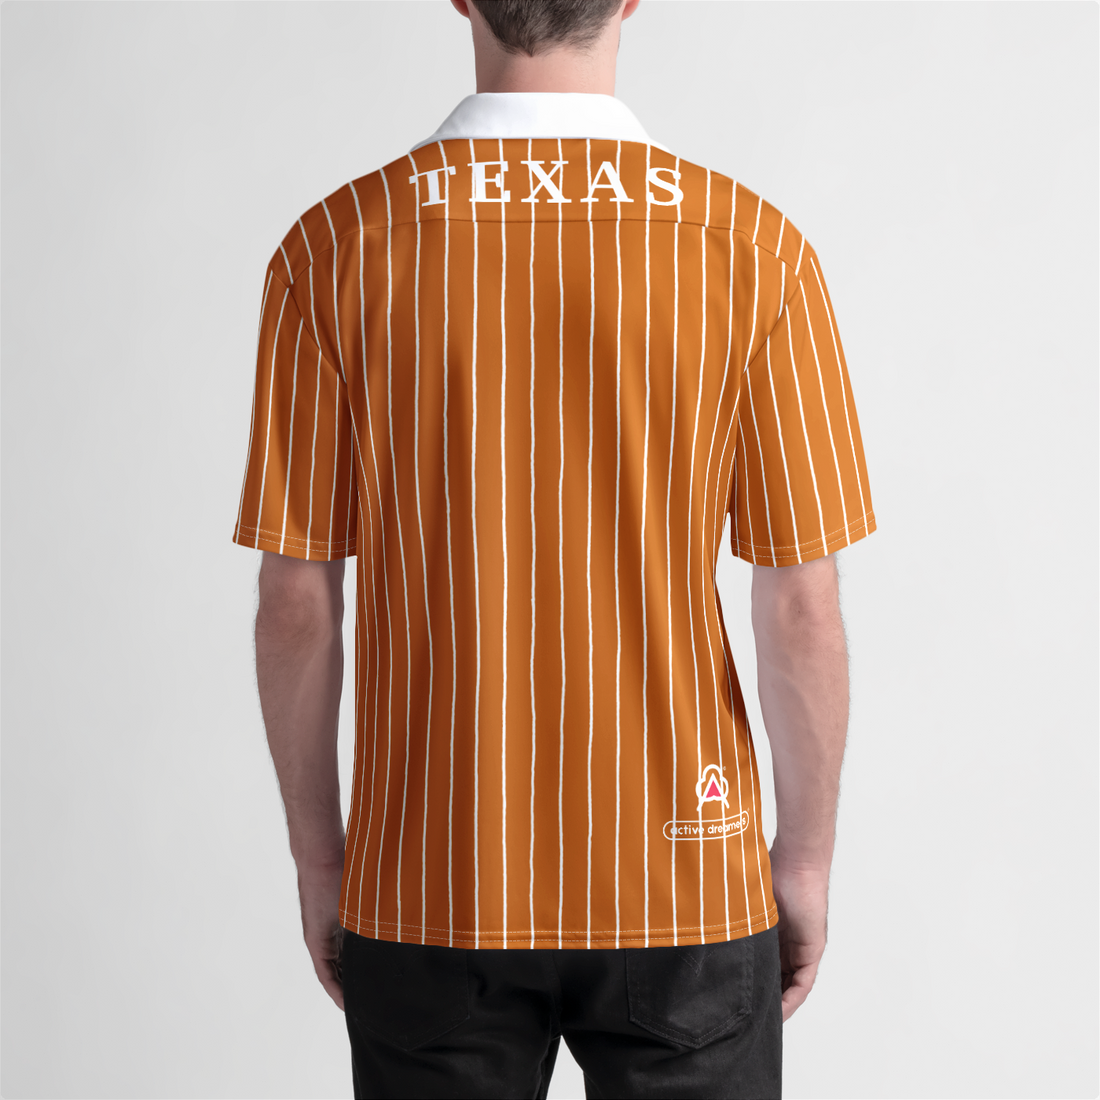 Texas Beach Shirt